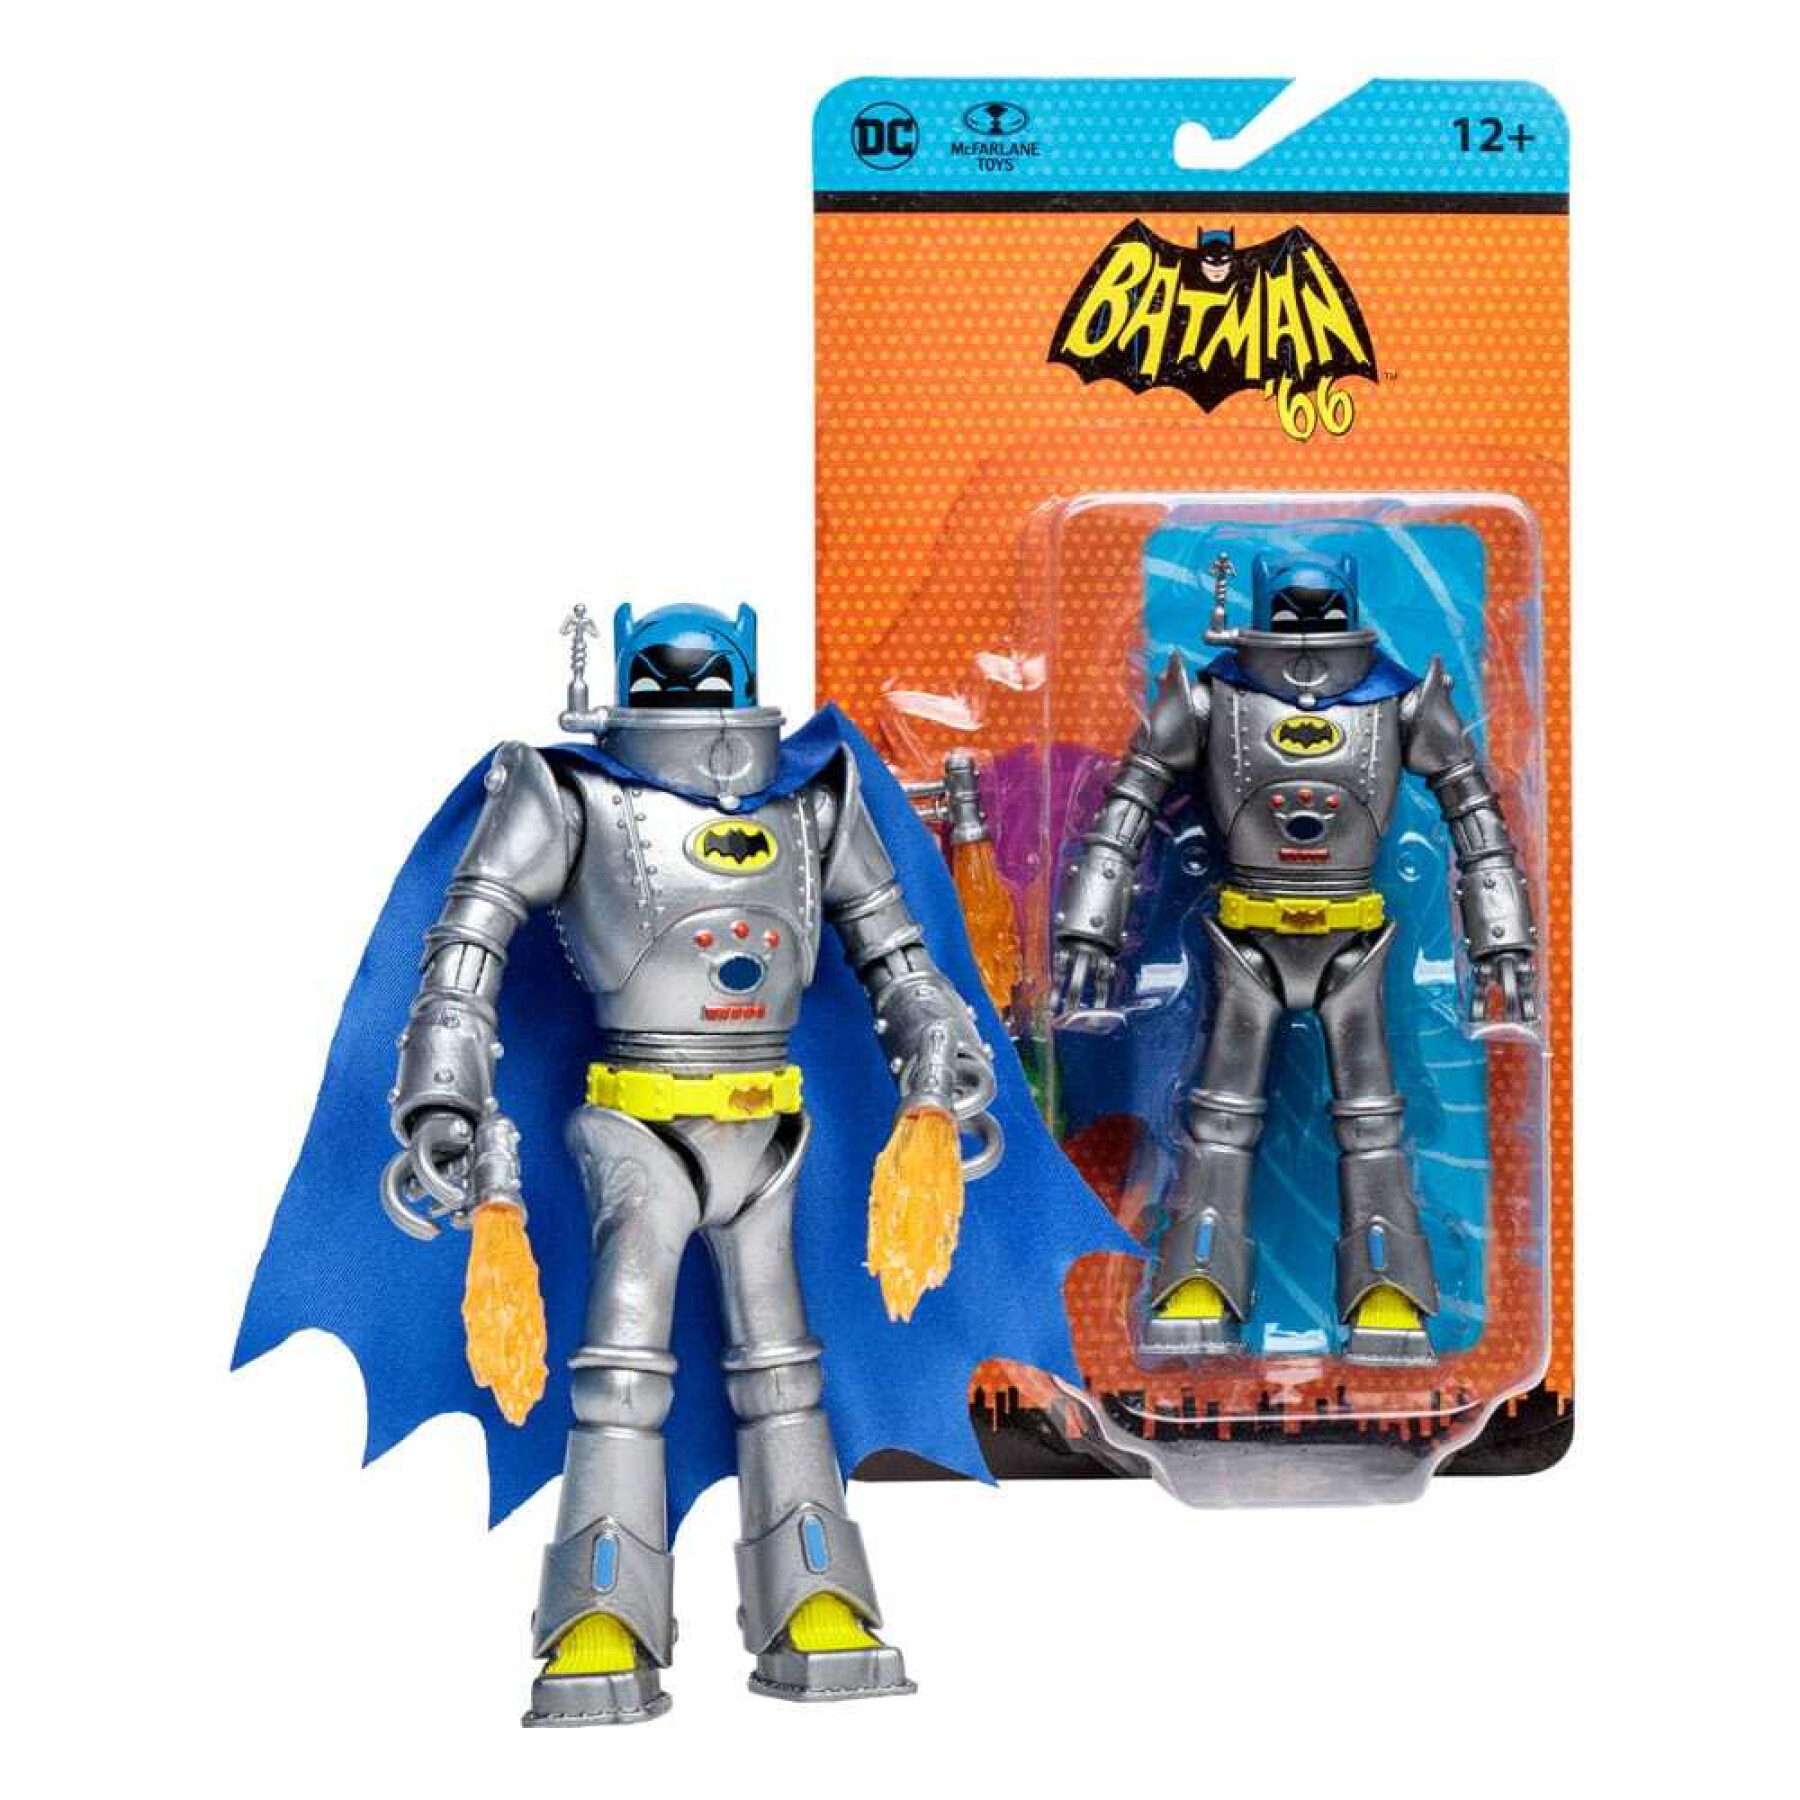 Beeldje McFarlane Toys DC Retro Batman 66 Robot